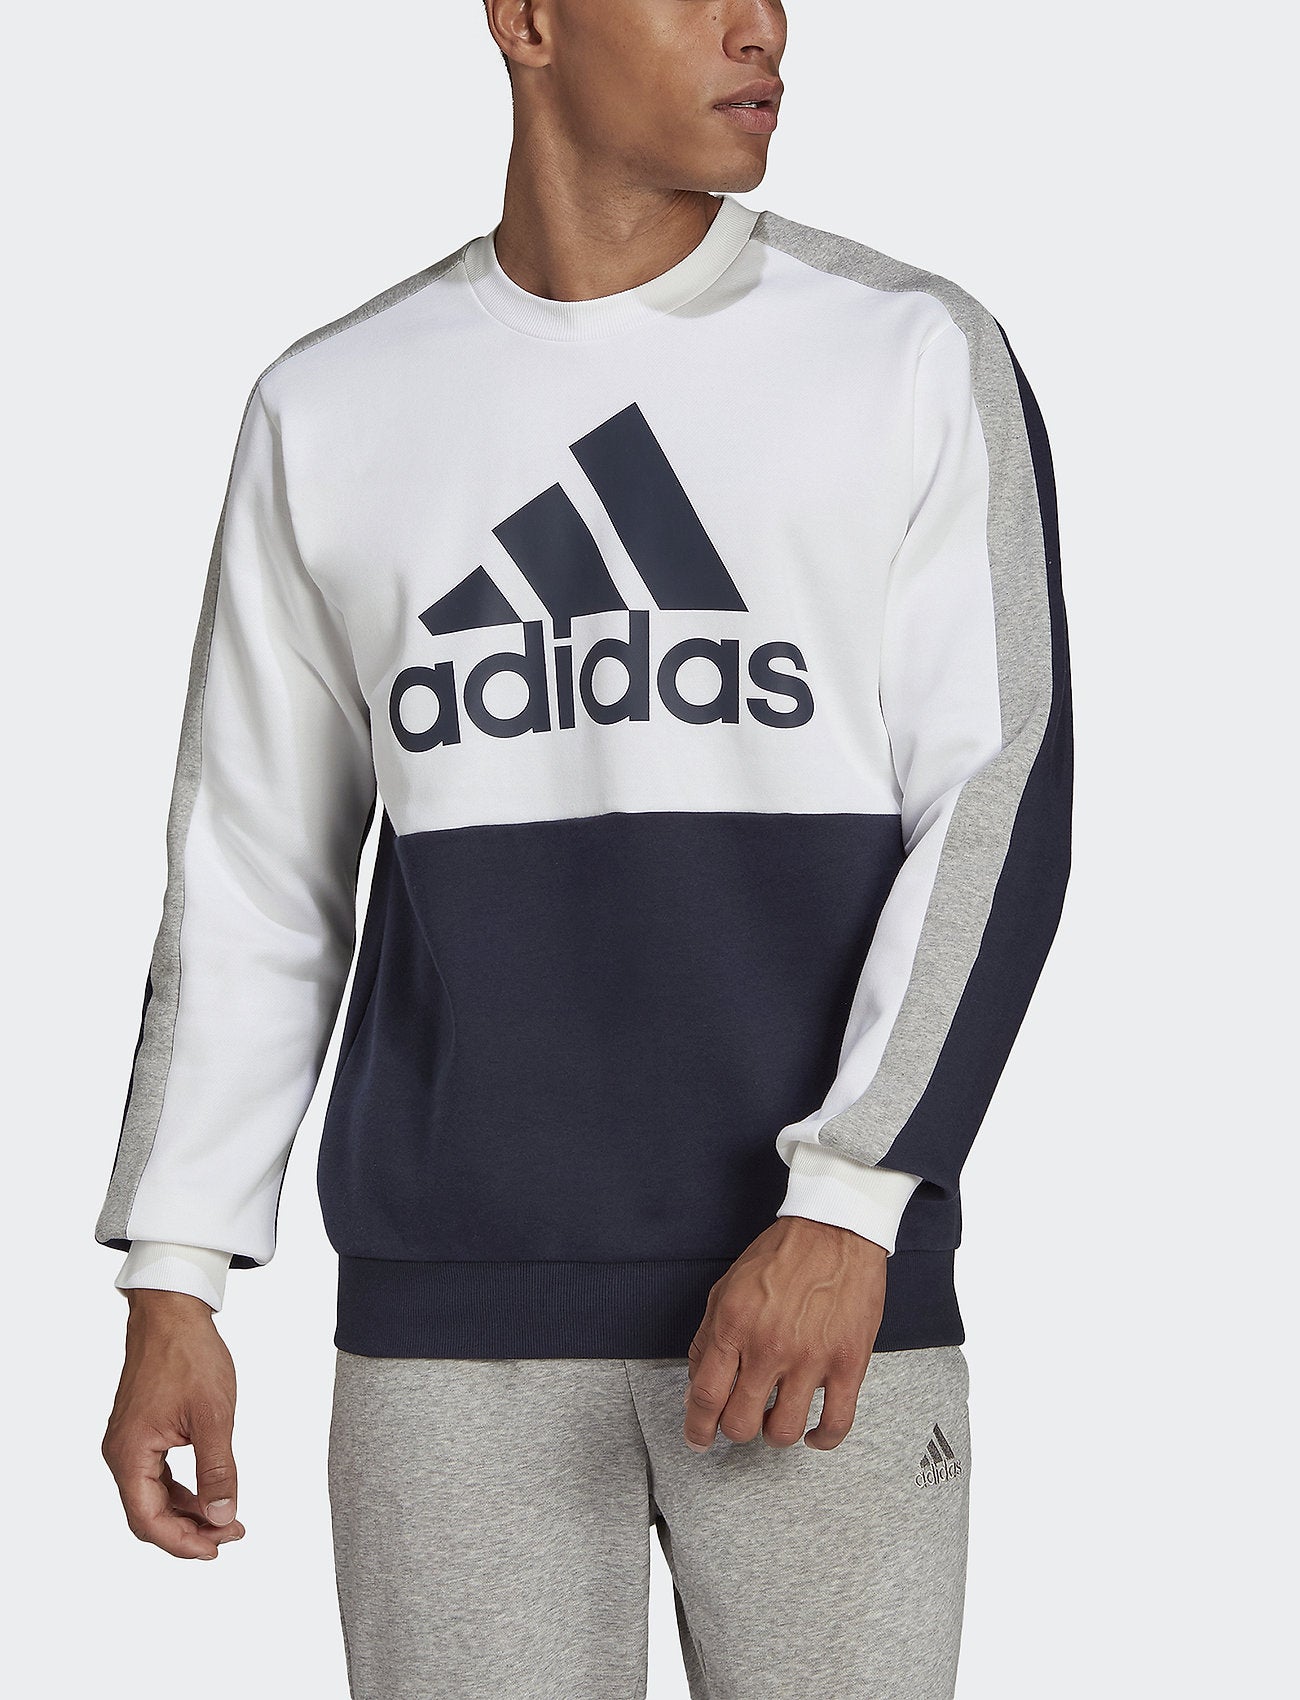 Adidas Essentials Colorblock Sweatshirt - White/Grey/Blue FootKorner